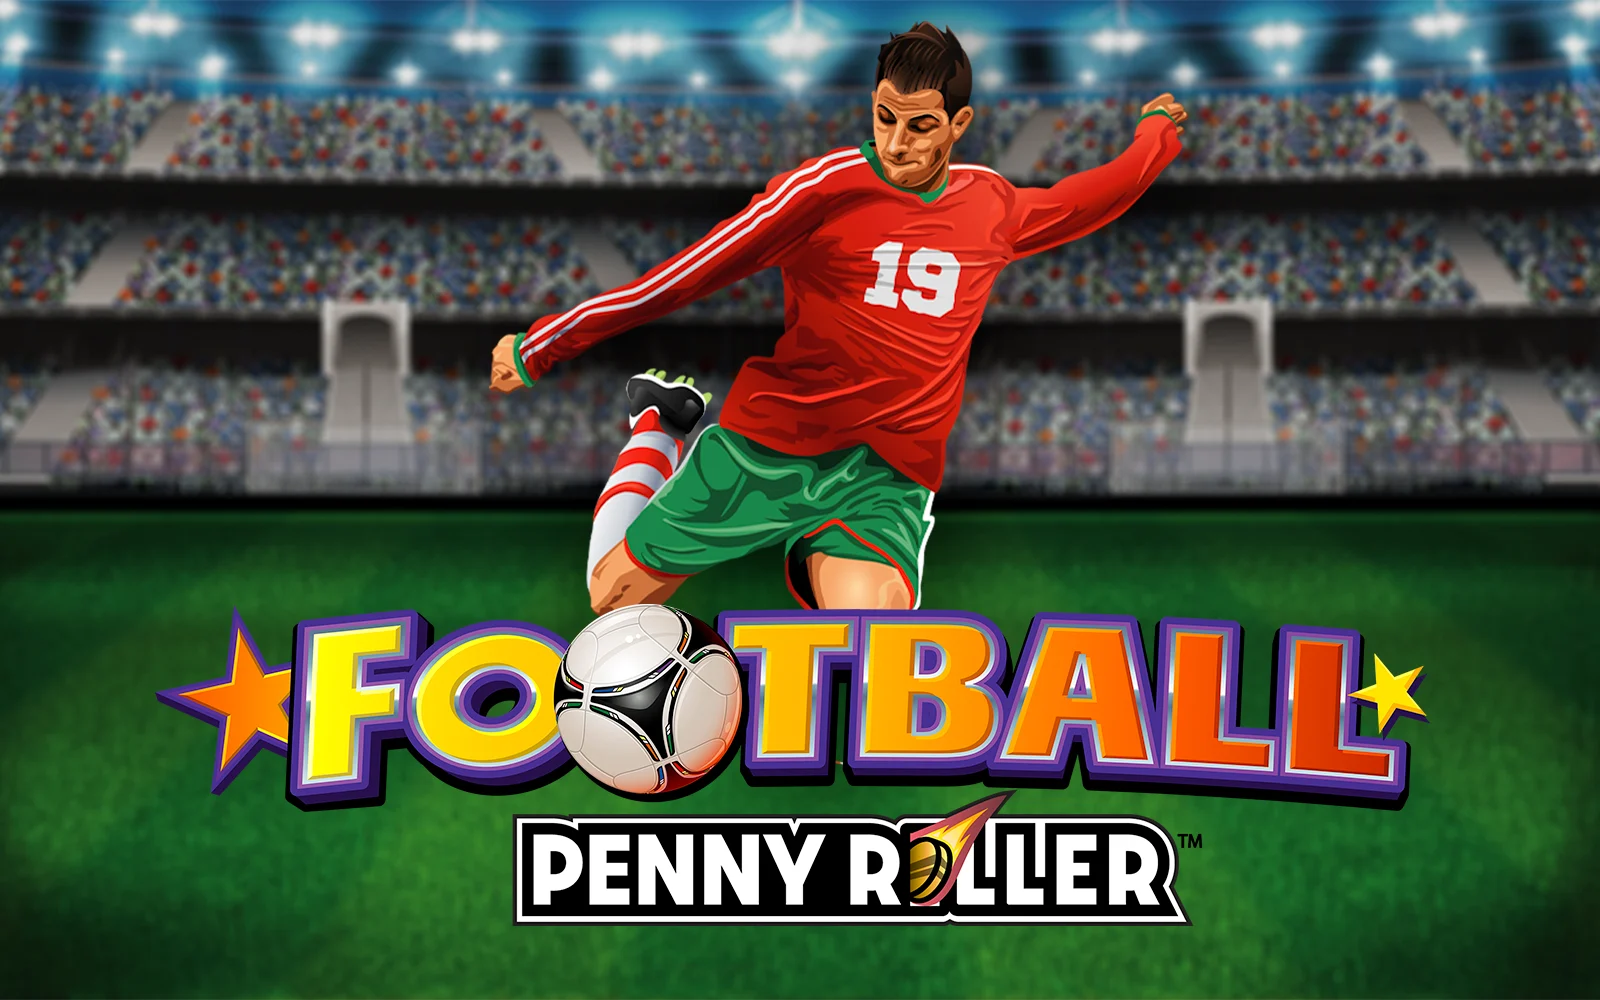 เล่น Football Penny Roller™ บนคาสิโนออนไลน์ Starcasino.be